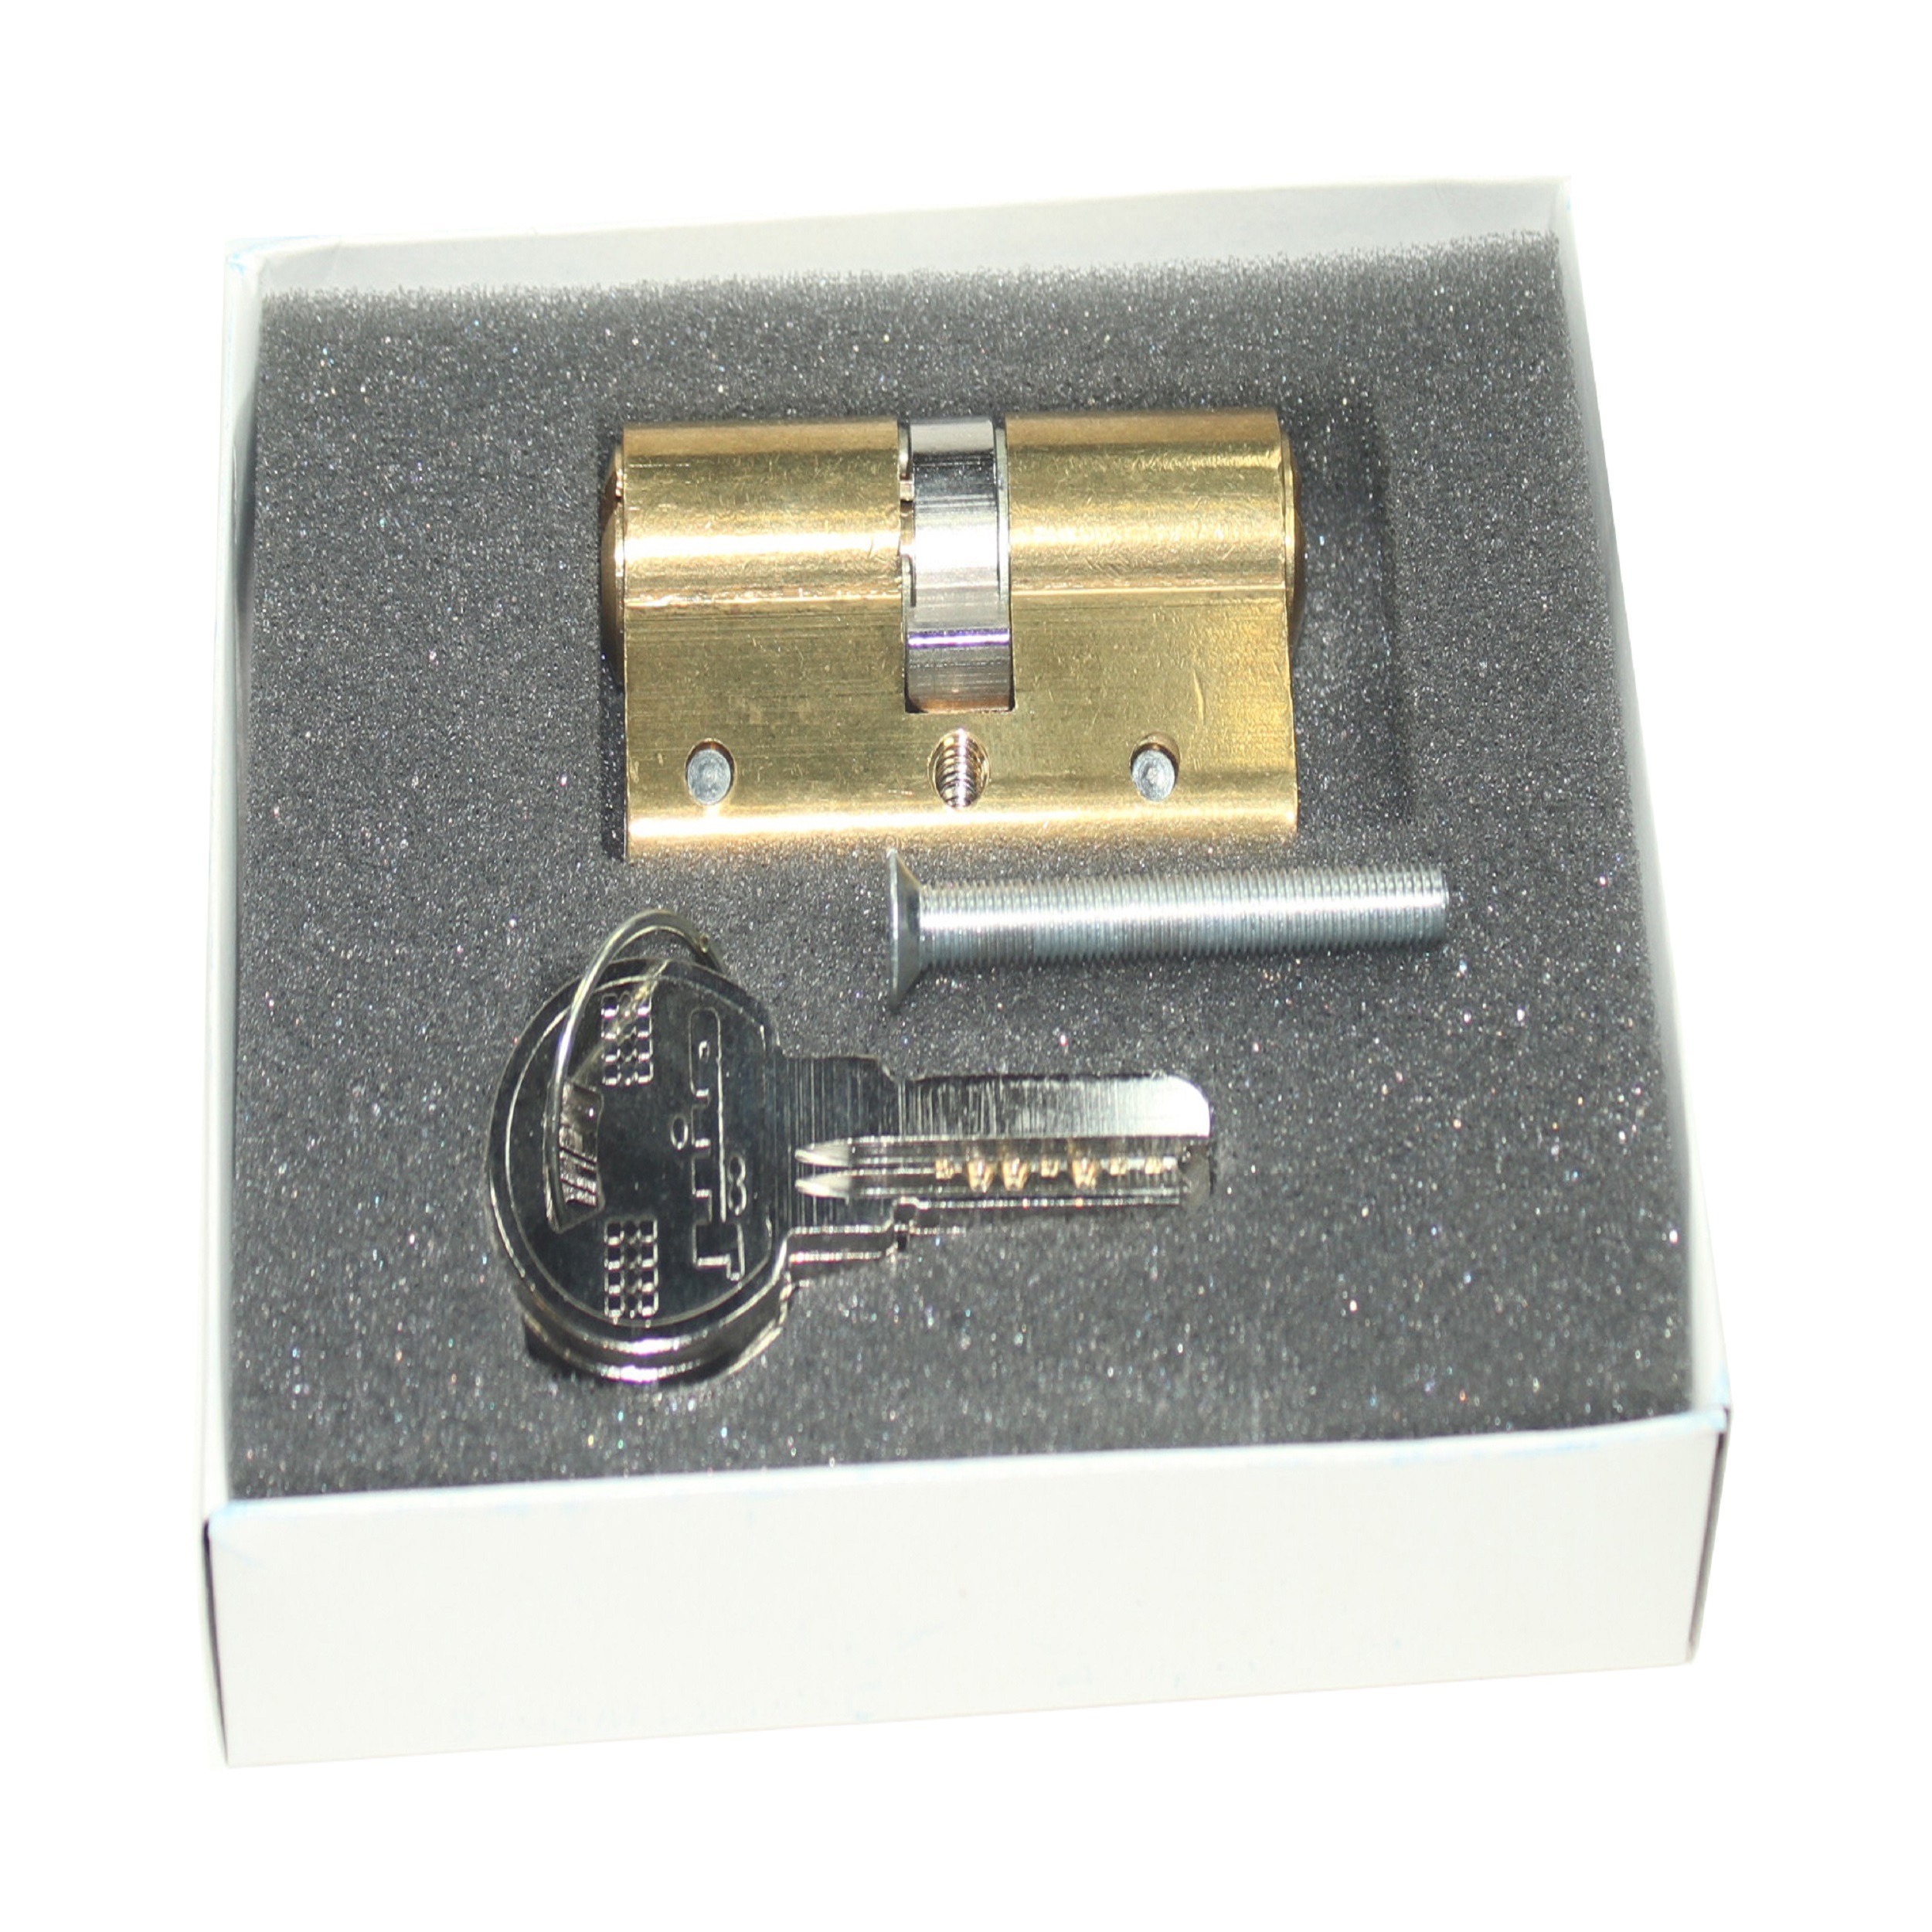 قفل توپی منیر مدل 6 کد 6041